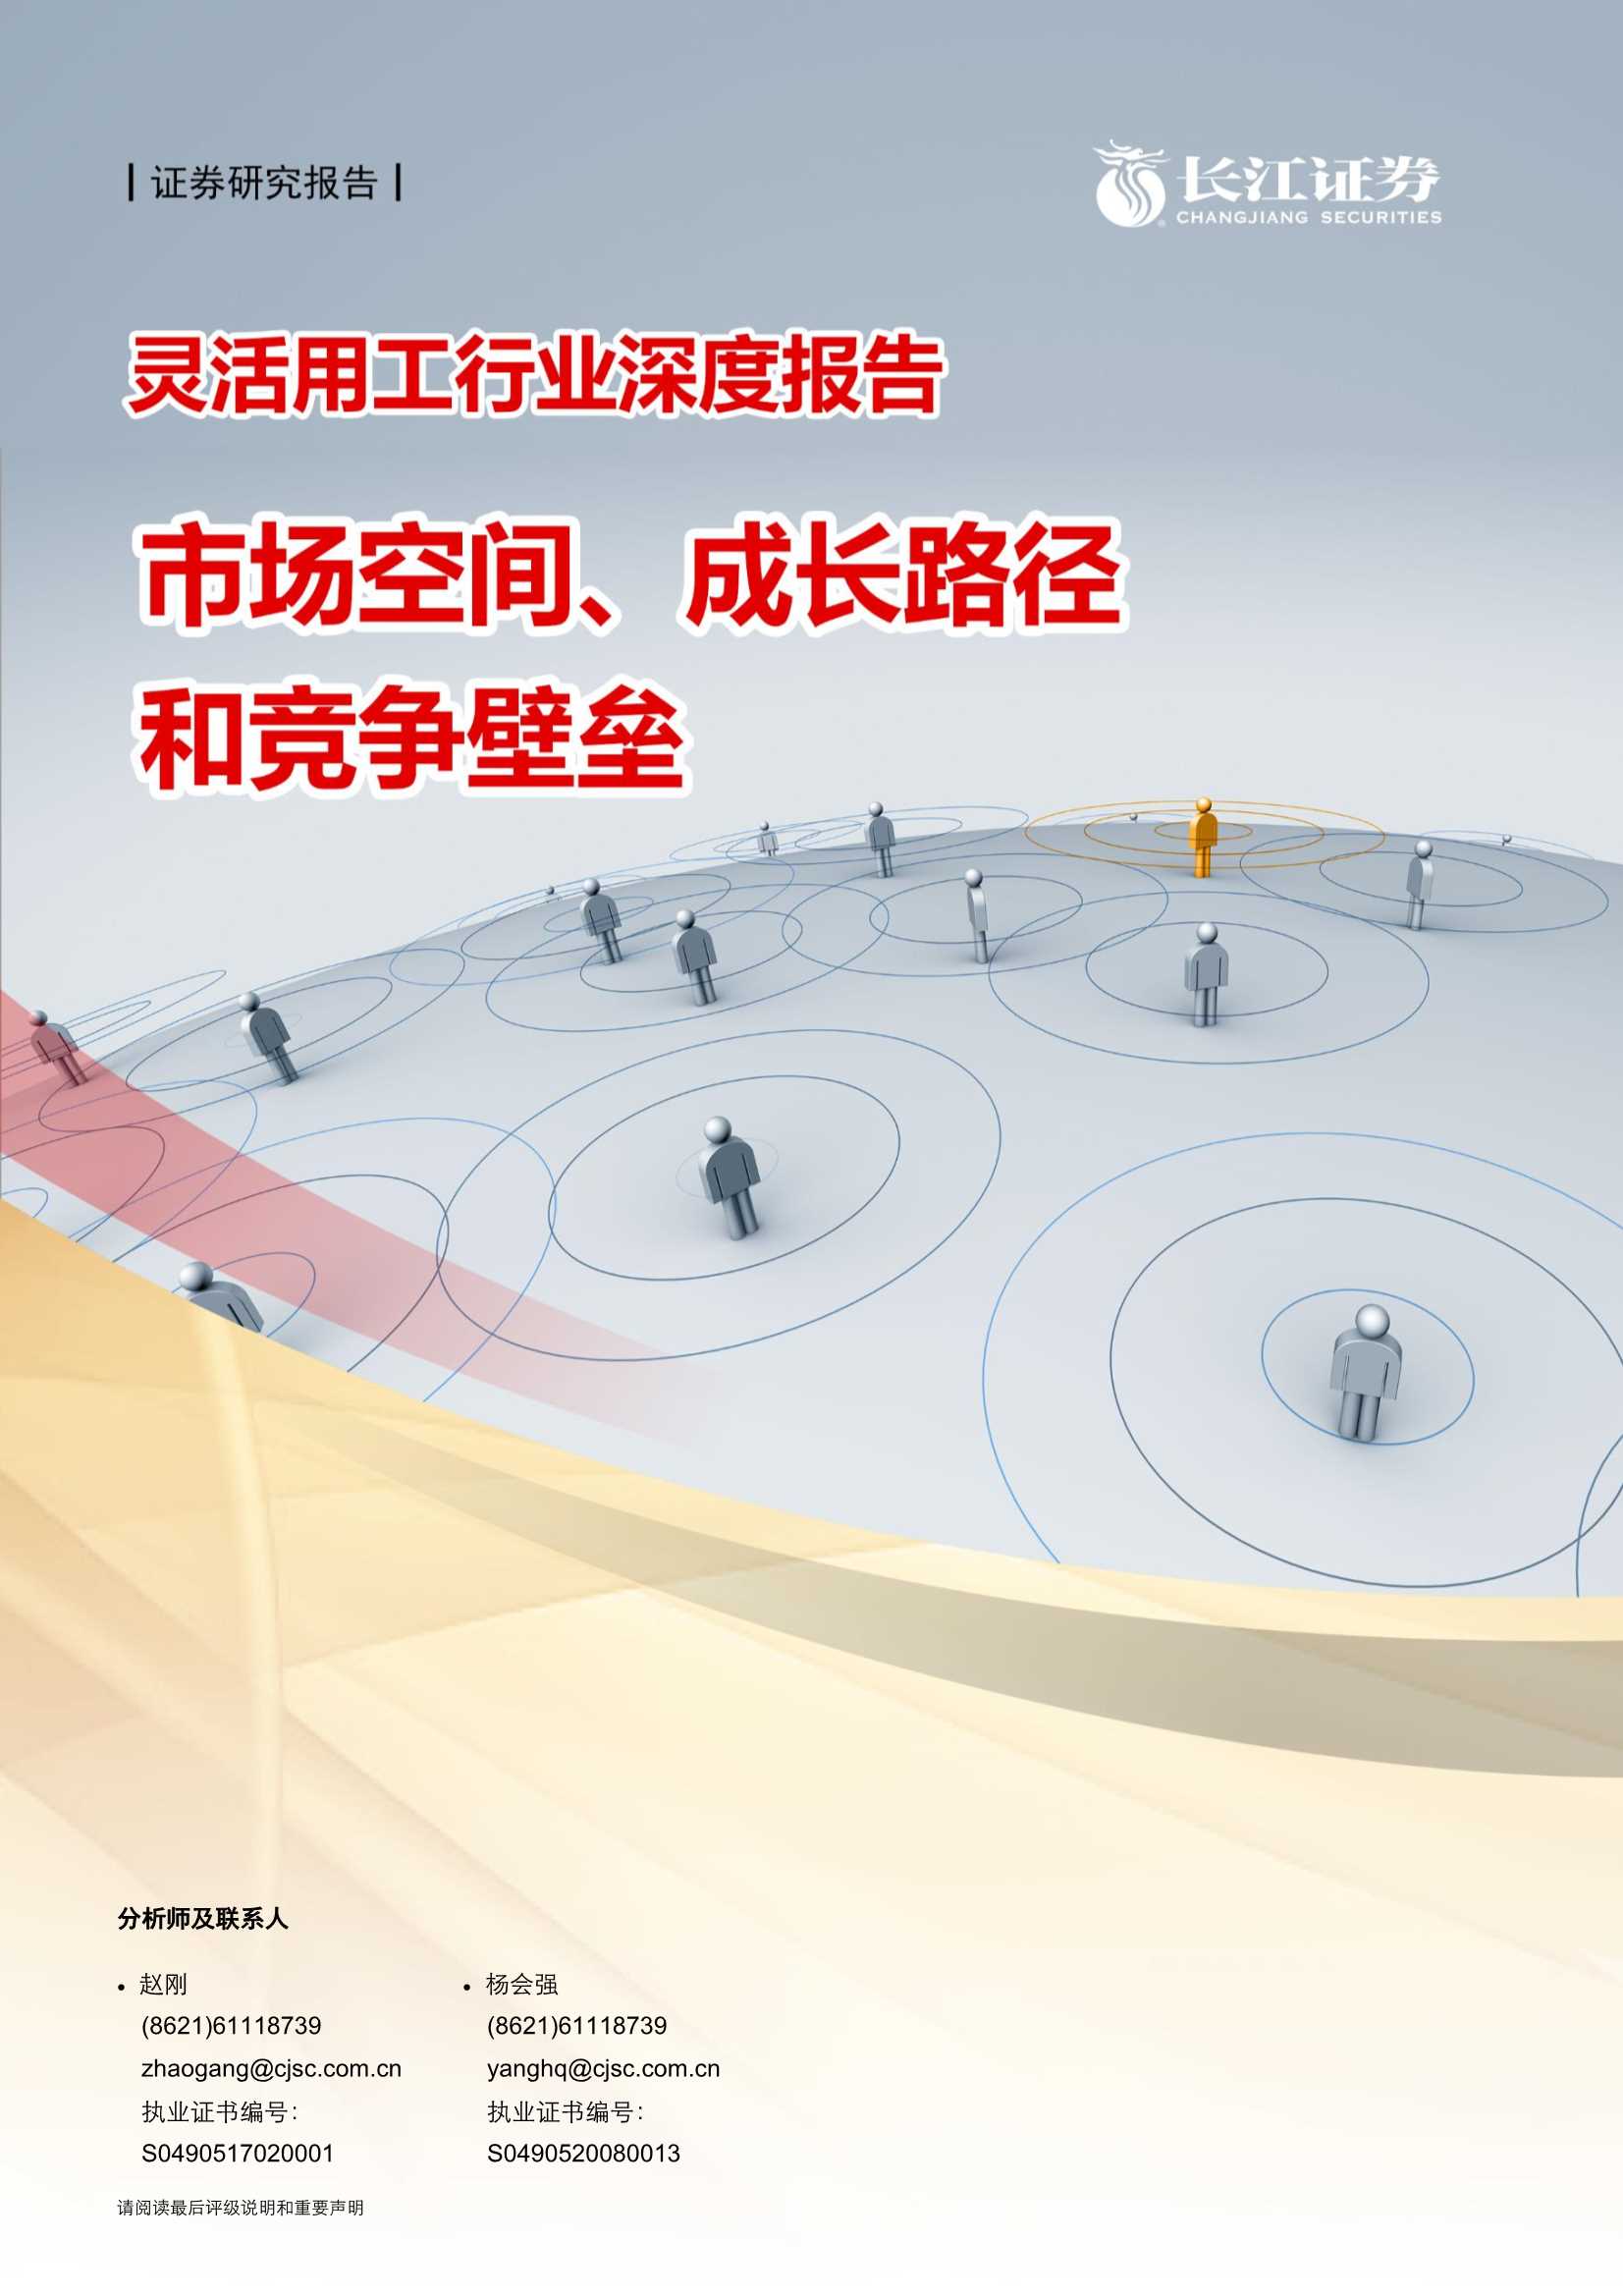 长江证券-灵活用工行业深度报告：市场空间、成长路径和竞争壁垒-20210603-29页